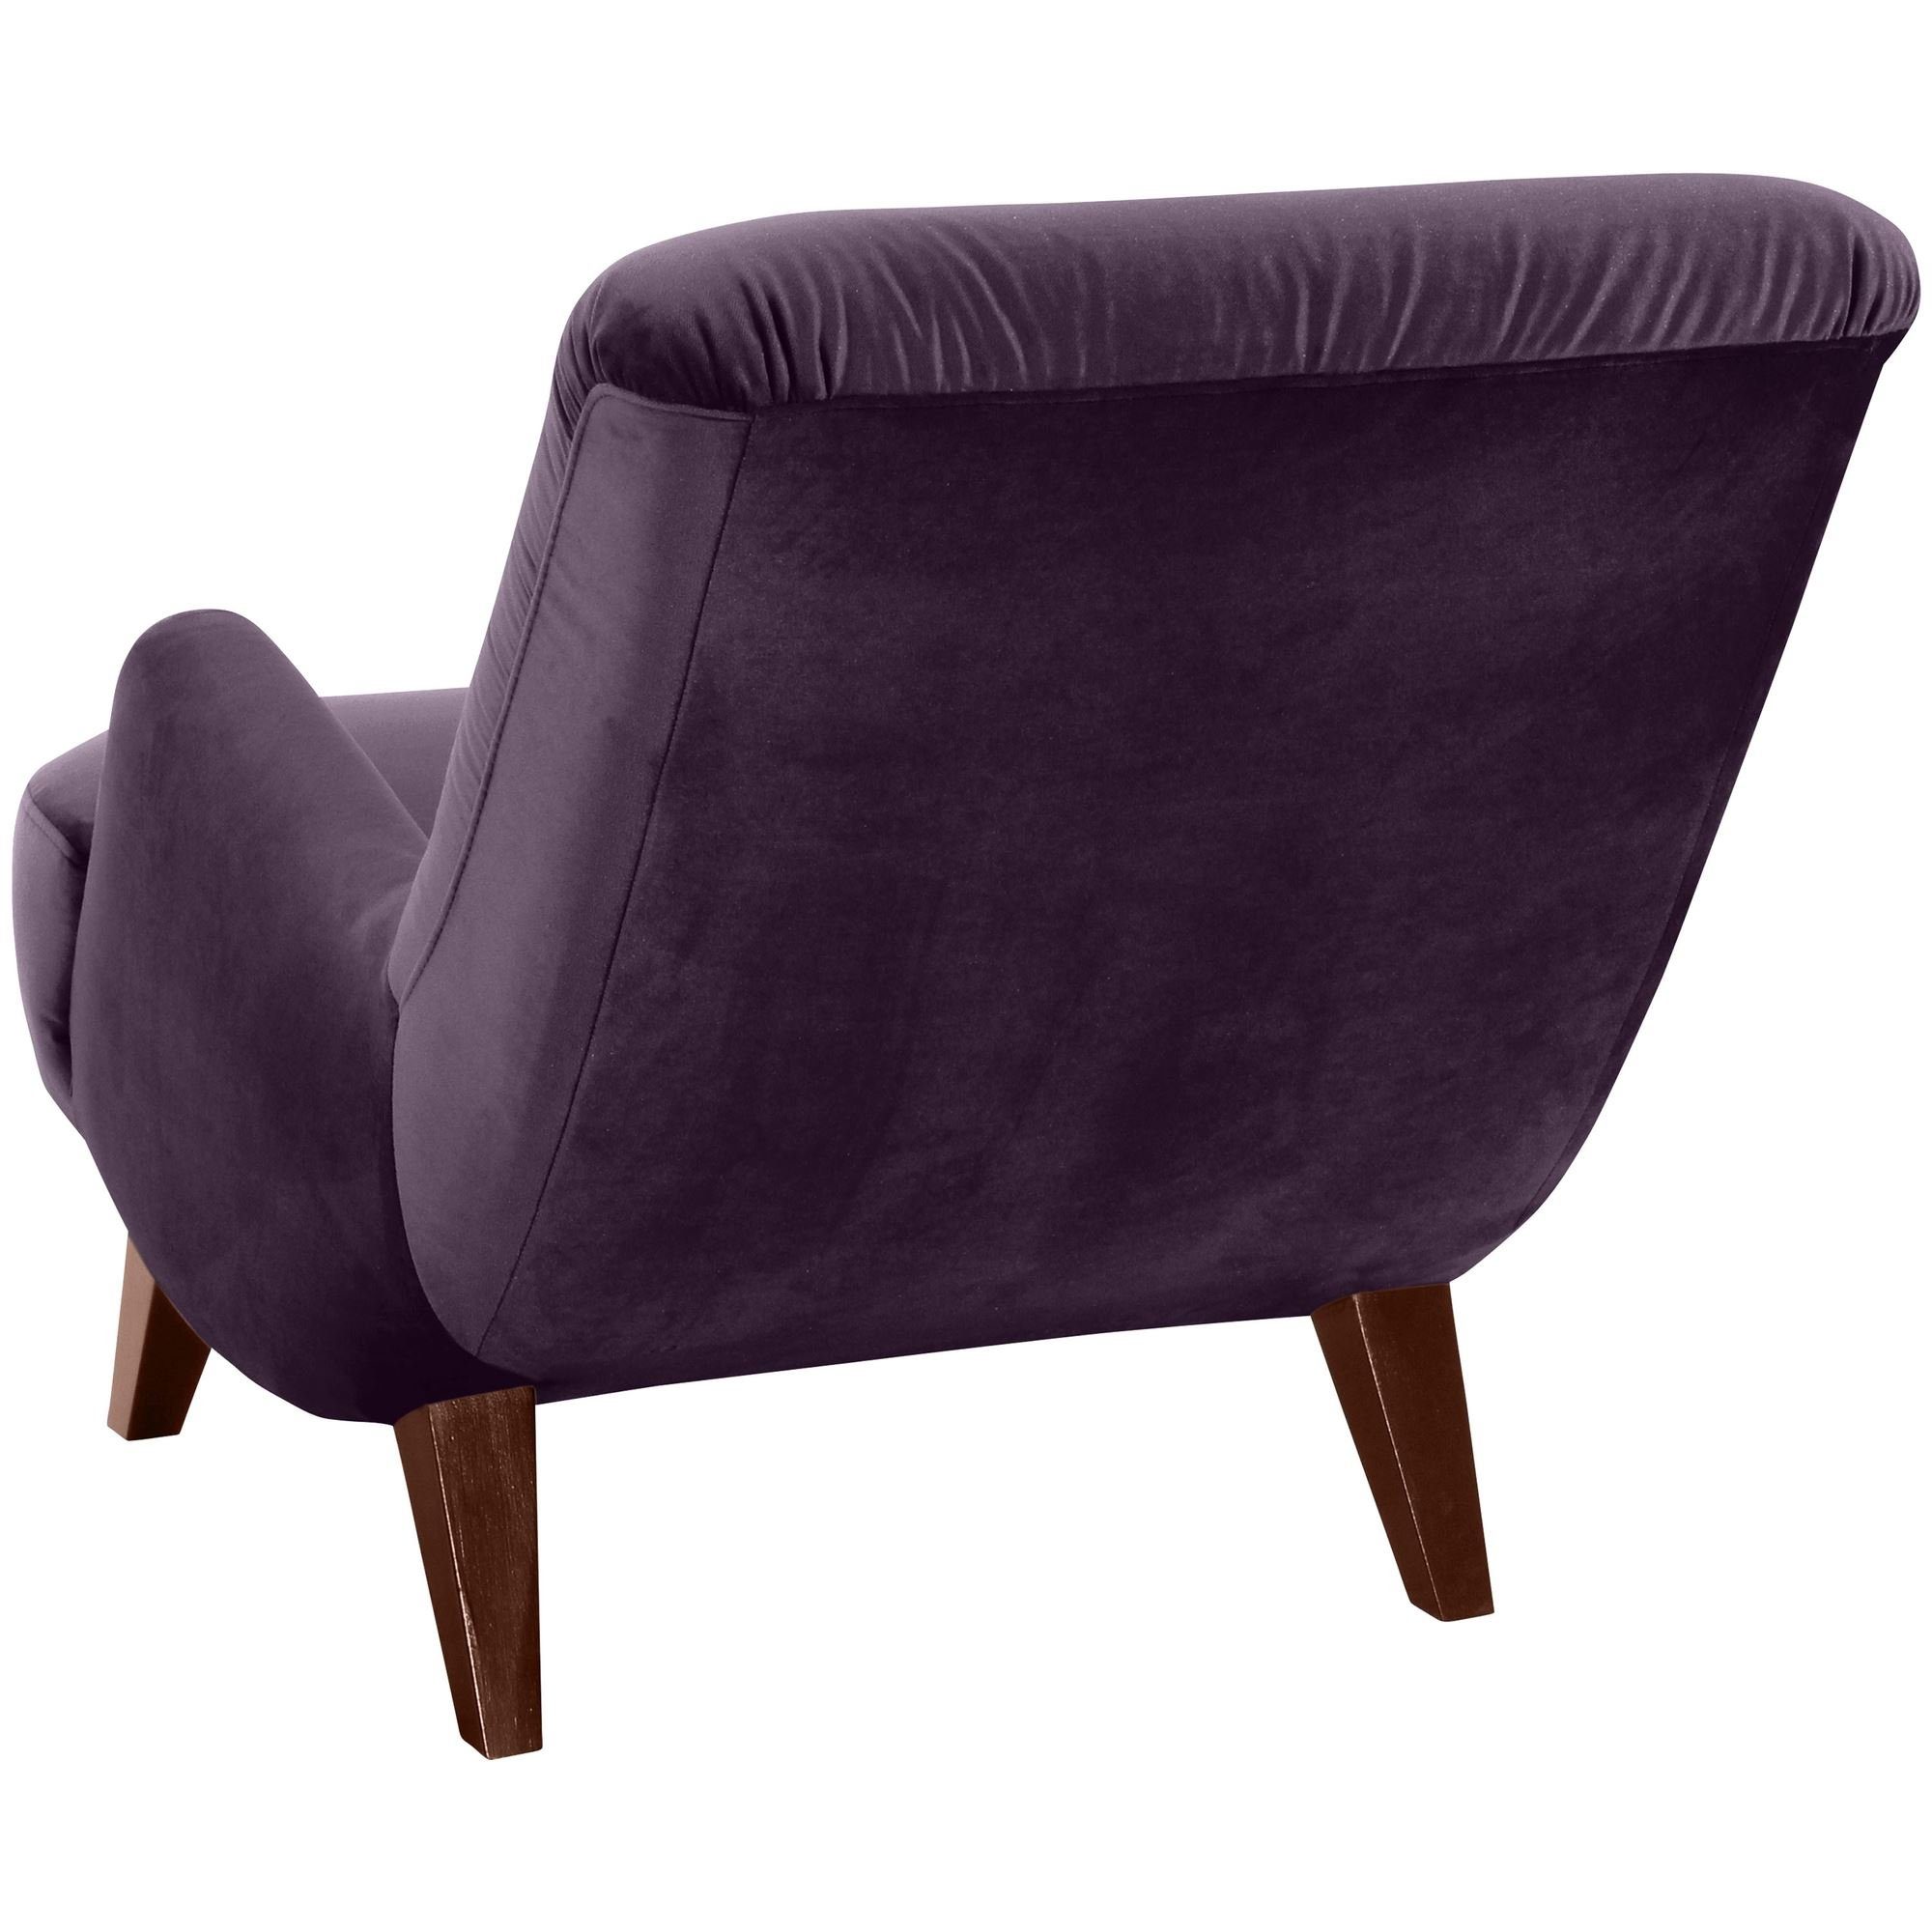 Sessel Kostenlosem purple Versand, / 58 inkl. Sessel (Sparpreis 1-St), Sitz nussbaum hochwertig Buche Bezug Samtvelours dunkel Kajsa verarbeitet,bequemer Kessel aufm 21271